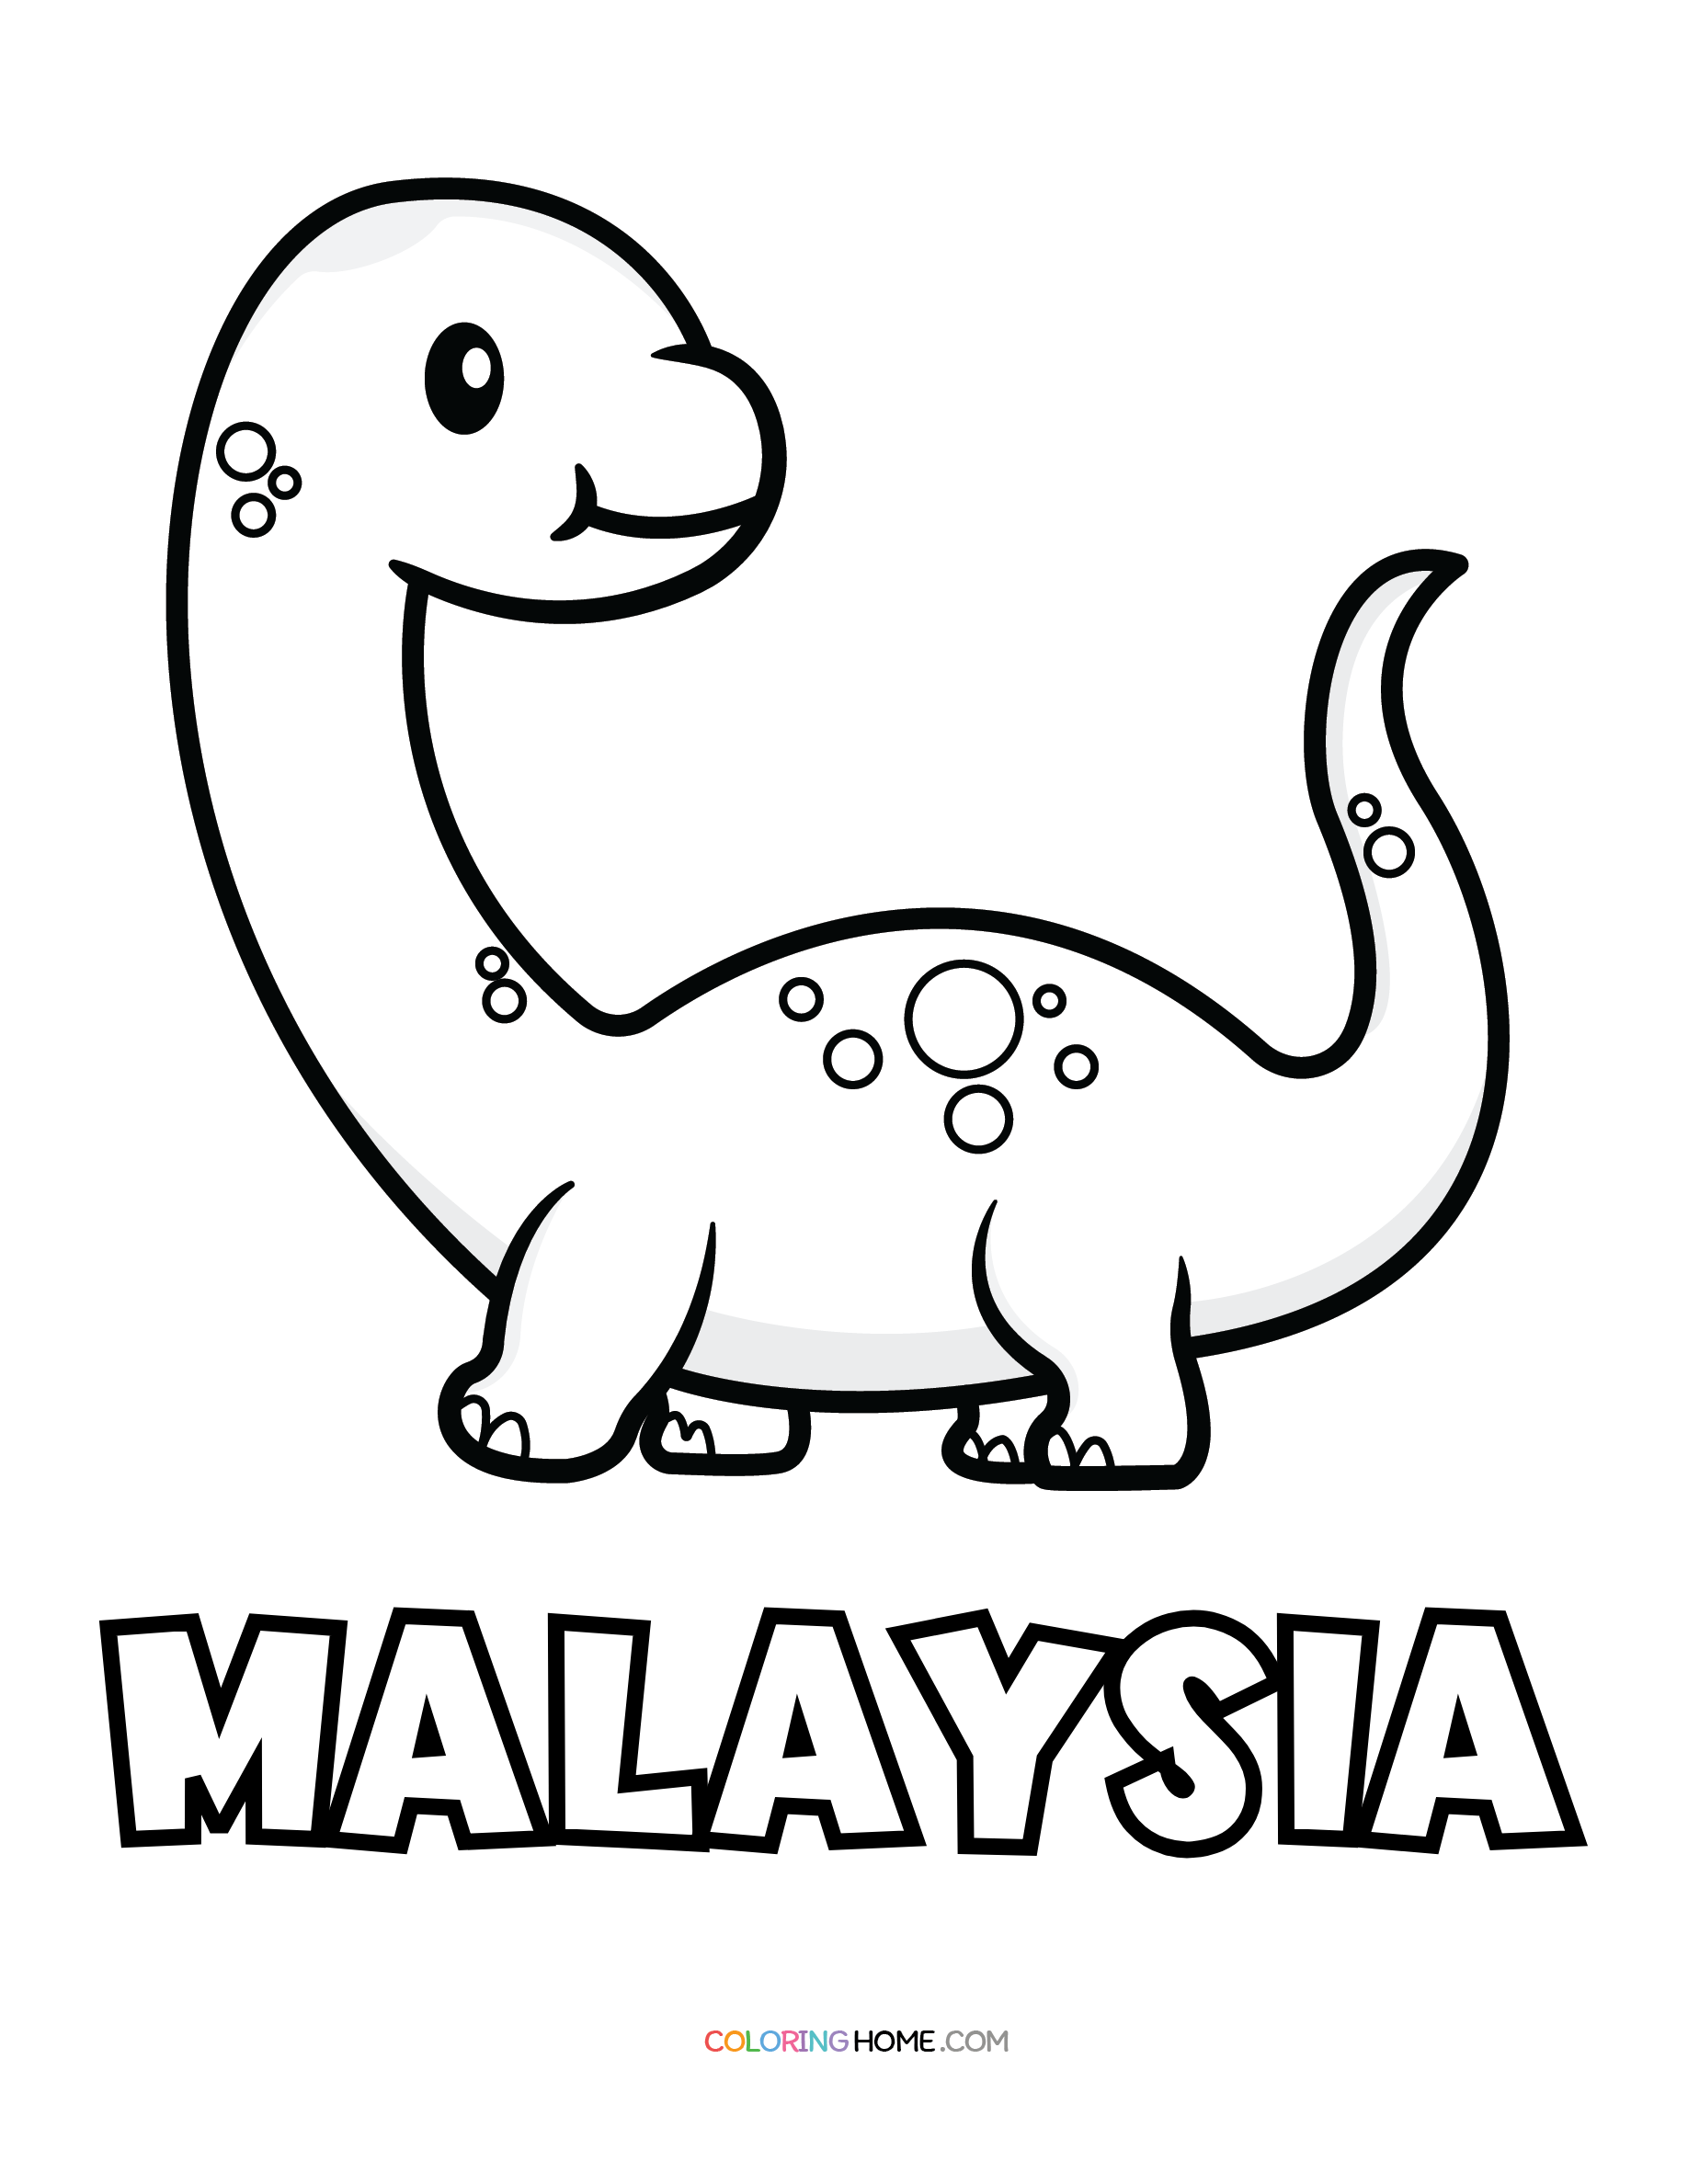 Malaysia dinosaur coloring page